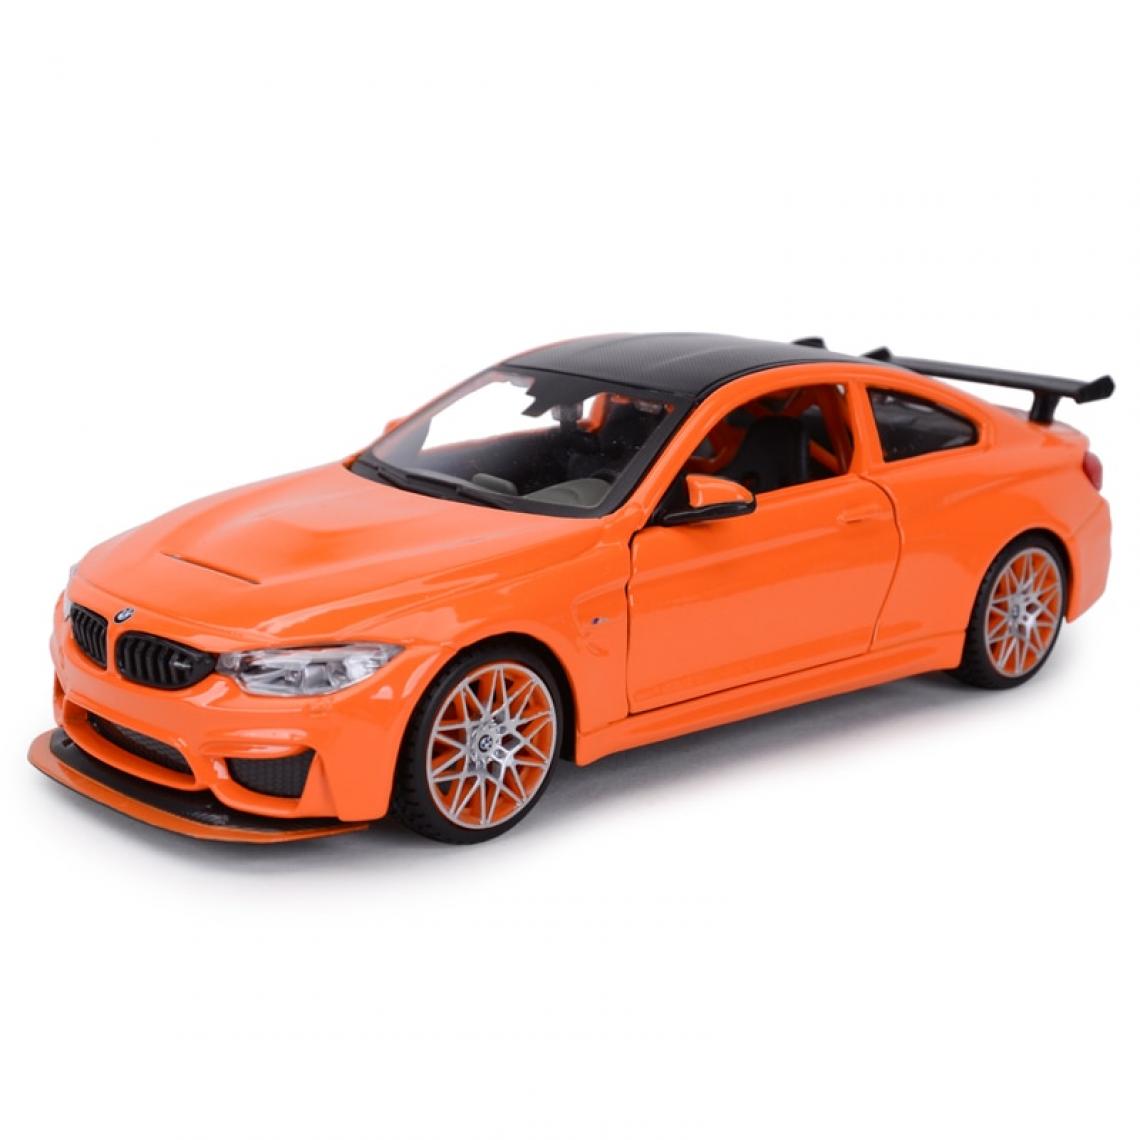 Universal - 1: 24 BMW M4 GTS Coupé statique Modèle collectable Voiture jouet | Voiture jouet moulée sous pression (orange) - Voitures